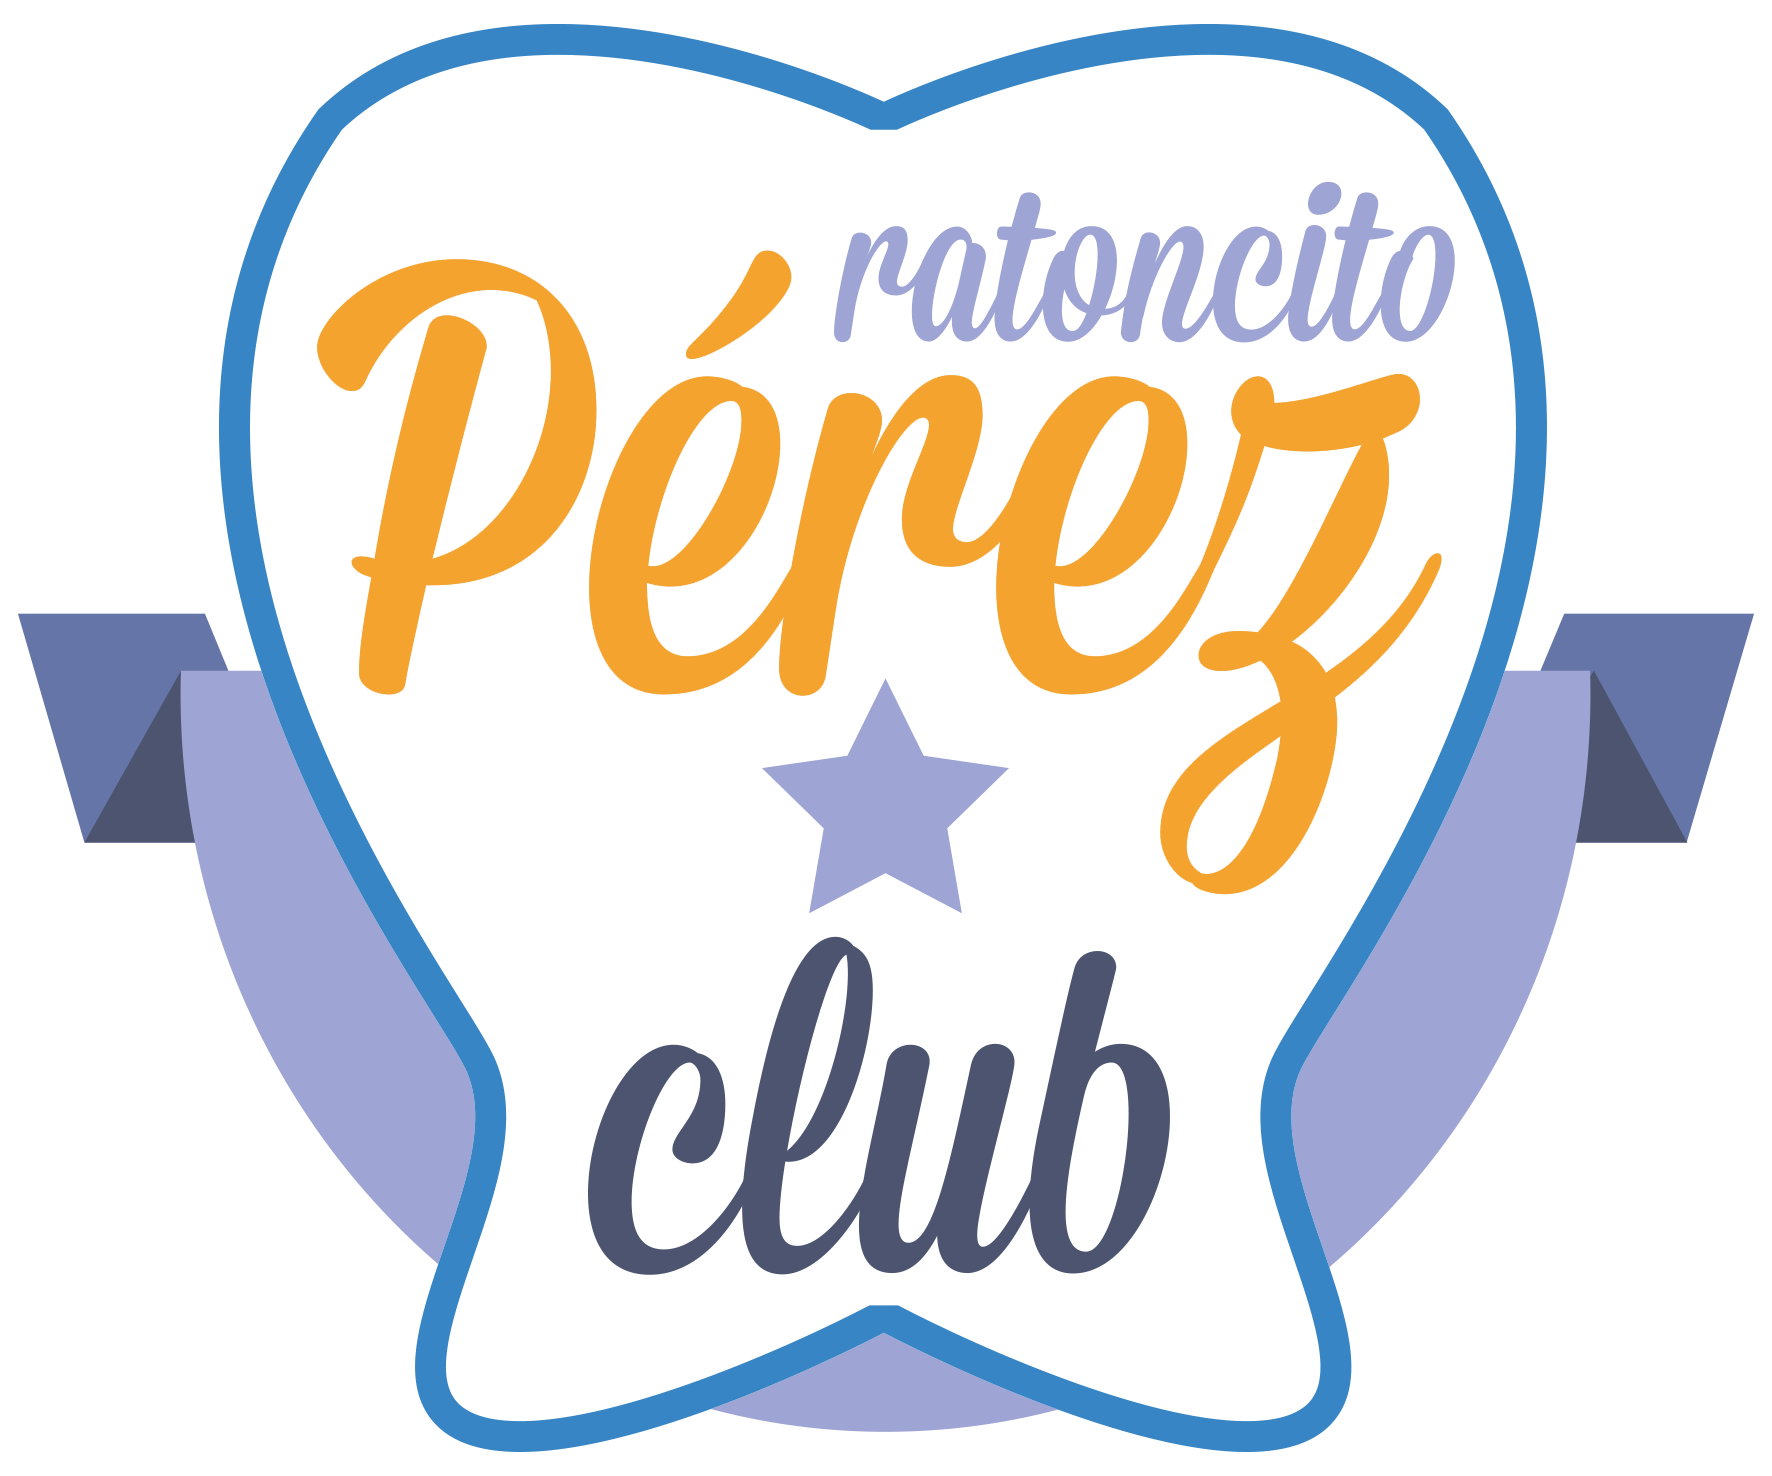 Clínica Dental Ratoncito Cabezón de Pisuerga Clínica Dental para niños del Club Ratoncito Pérez